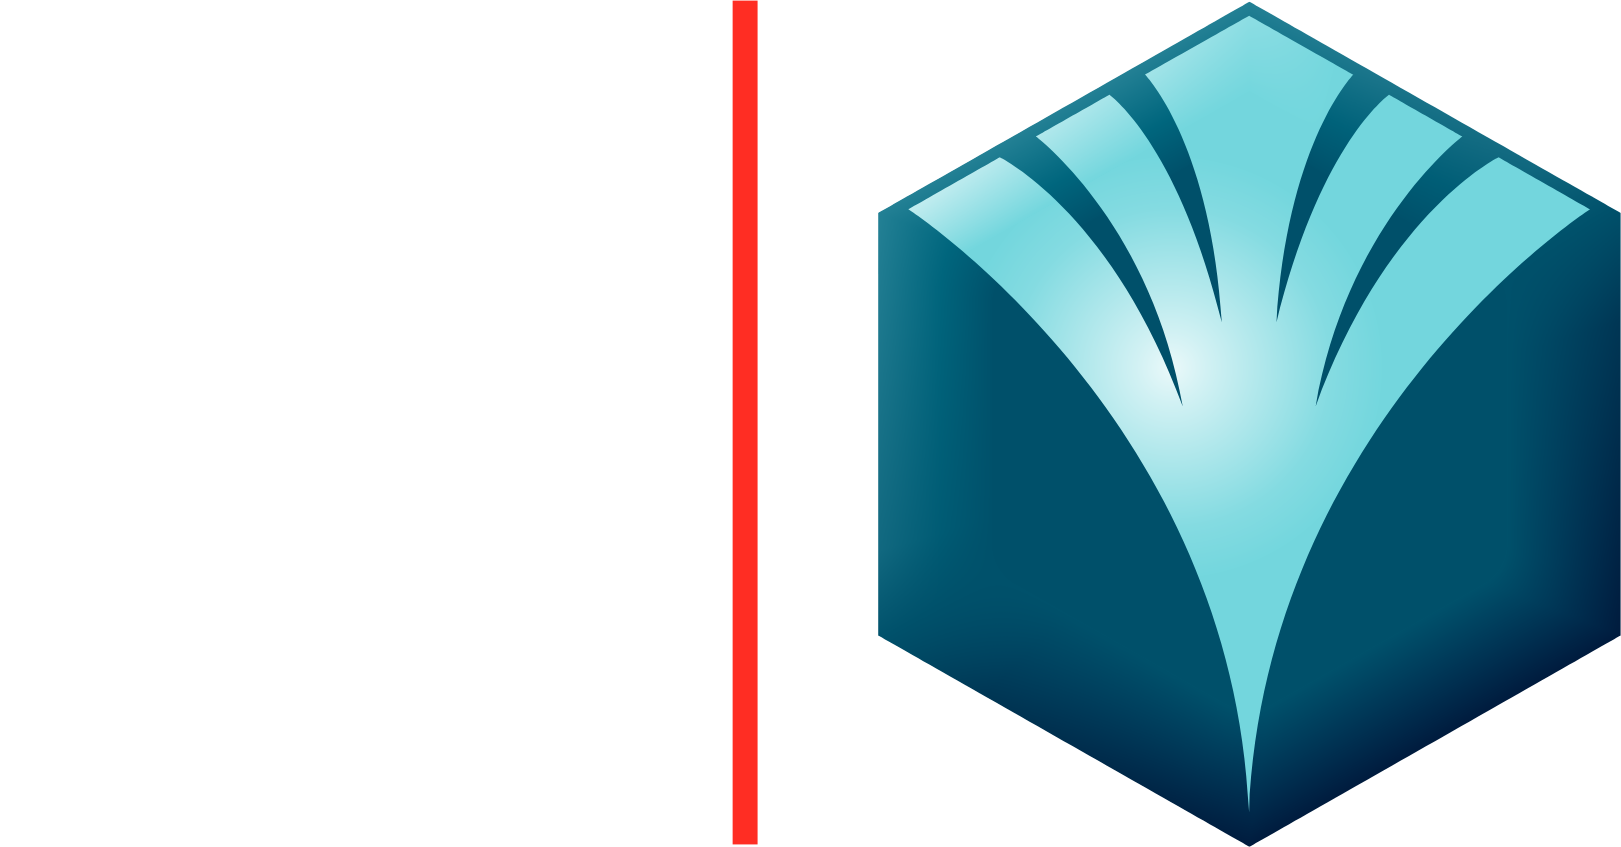 Banque Saudi Fransi Logo groß für dunkle Hintergründe (transparentes PNG)